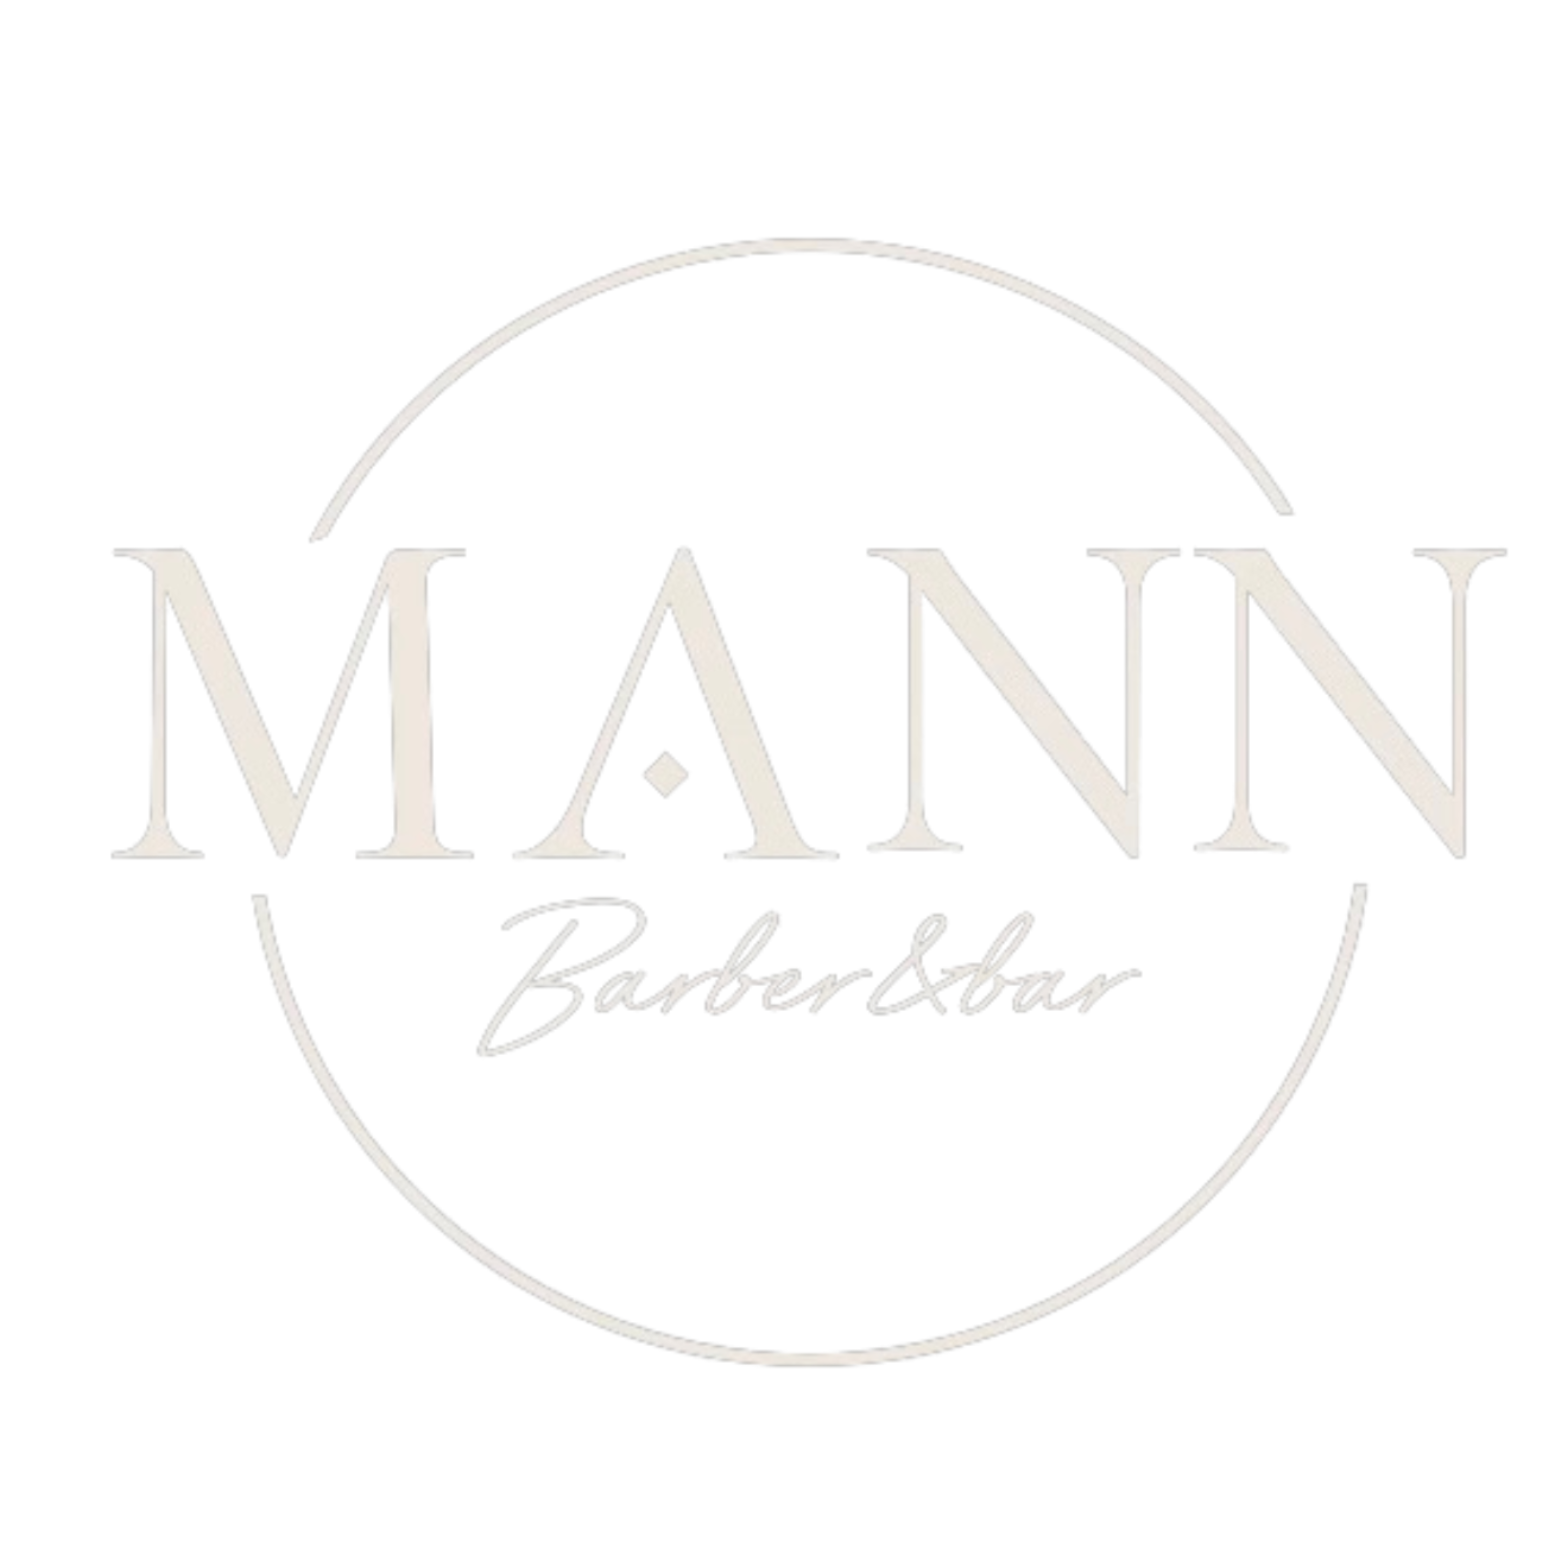 MAnn barber bar